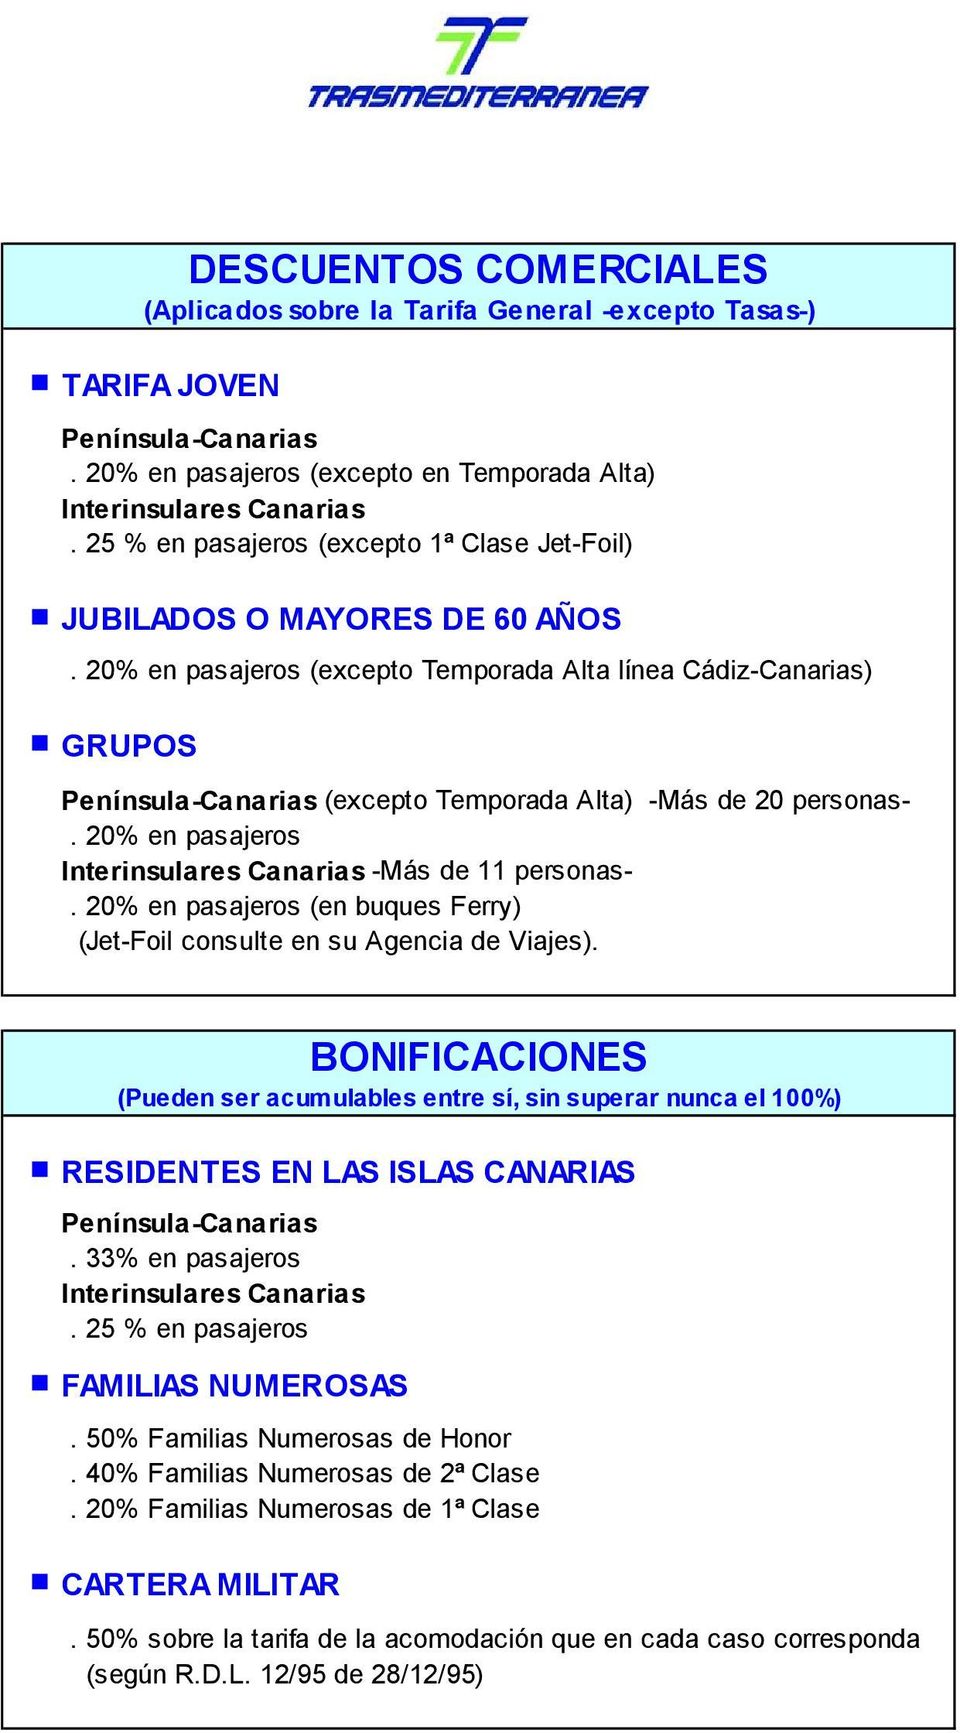 20% en pasajeros (excepto Temporada lta línea Cádiz-Canarias) GRUPOS Península-Canarias (excepto Temporada lta) -Más de 20 personas-. 20% en pasajeros Interinsulares Canarias -Más de 11 personas-.